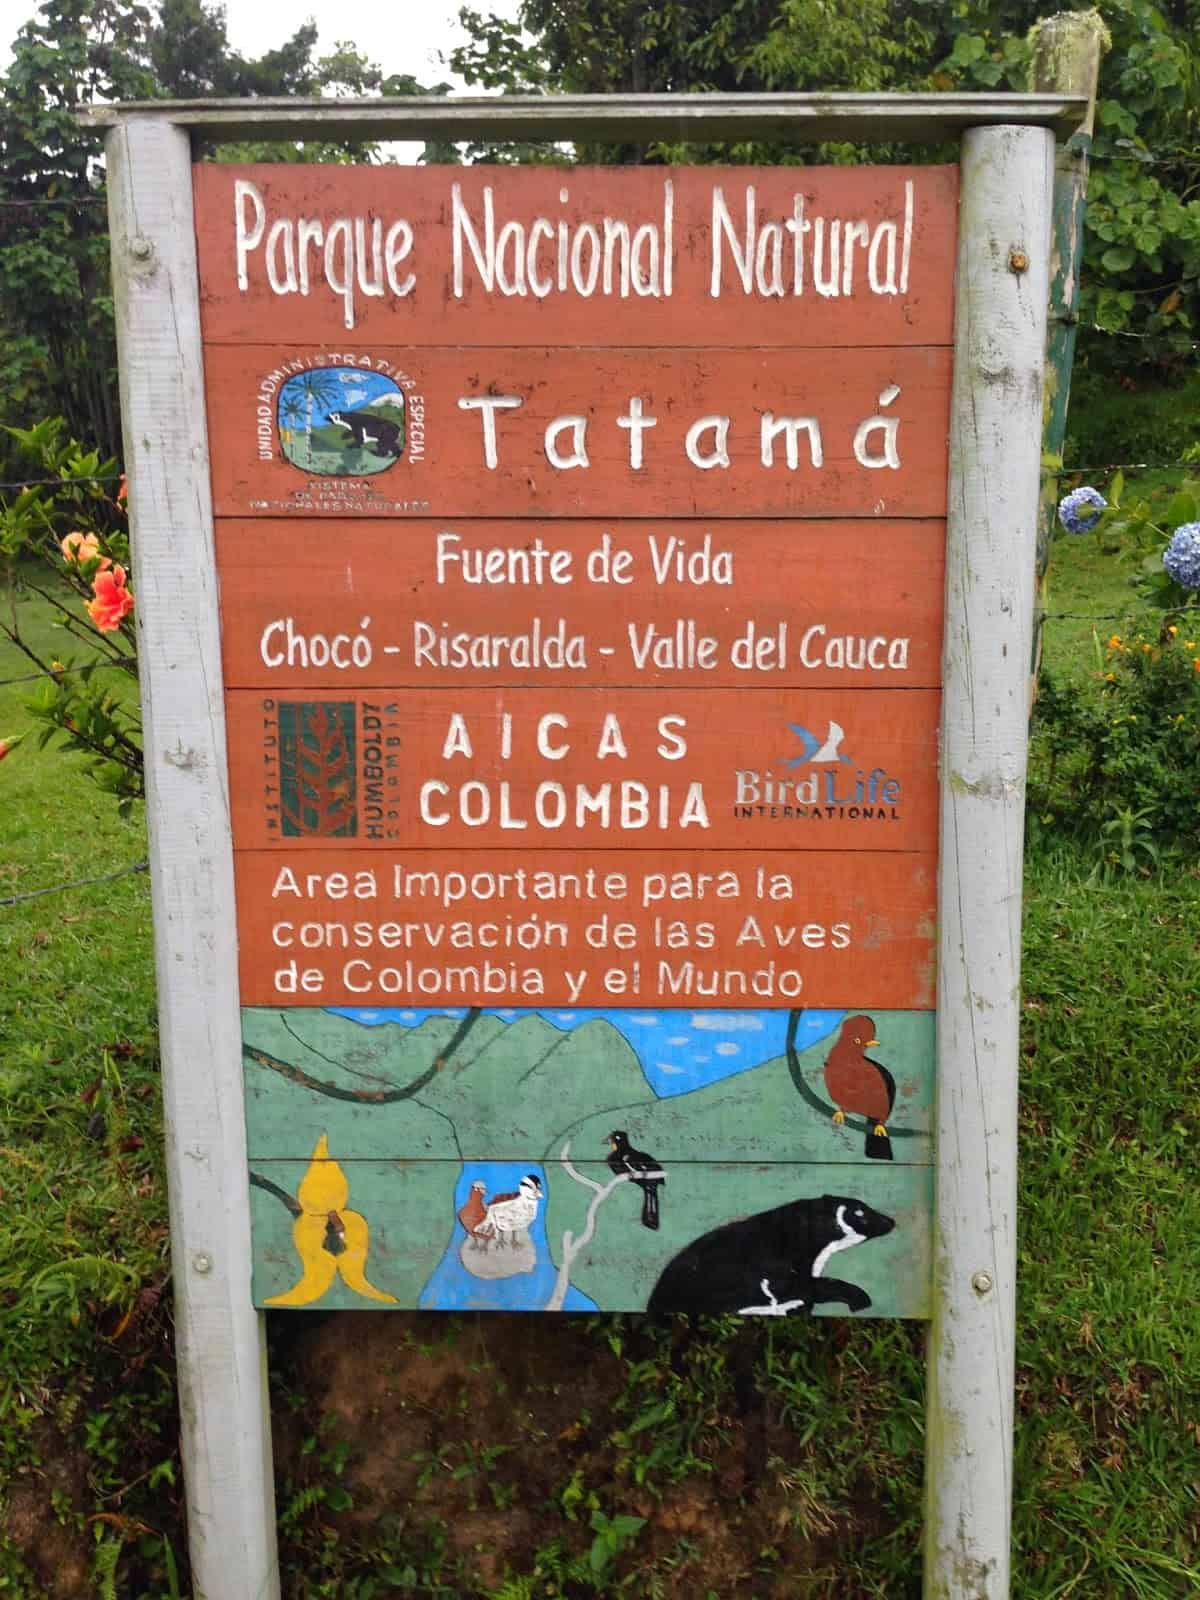 Parque Nacional Natural Tatamá in Colombia